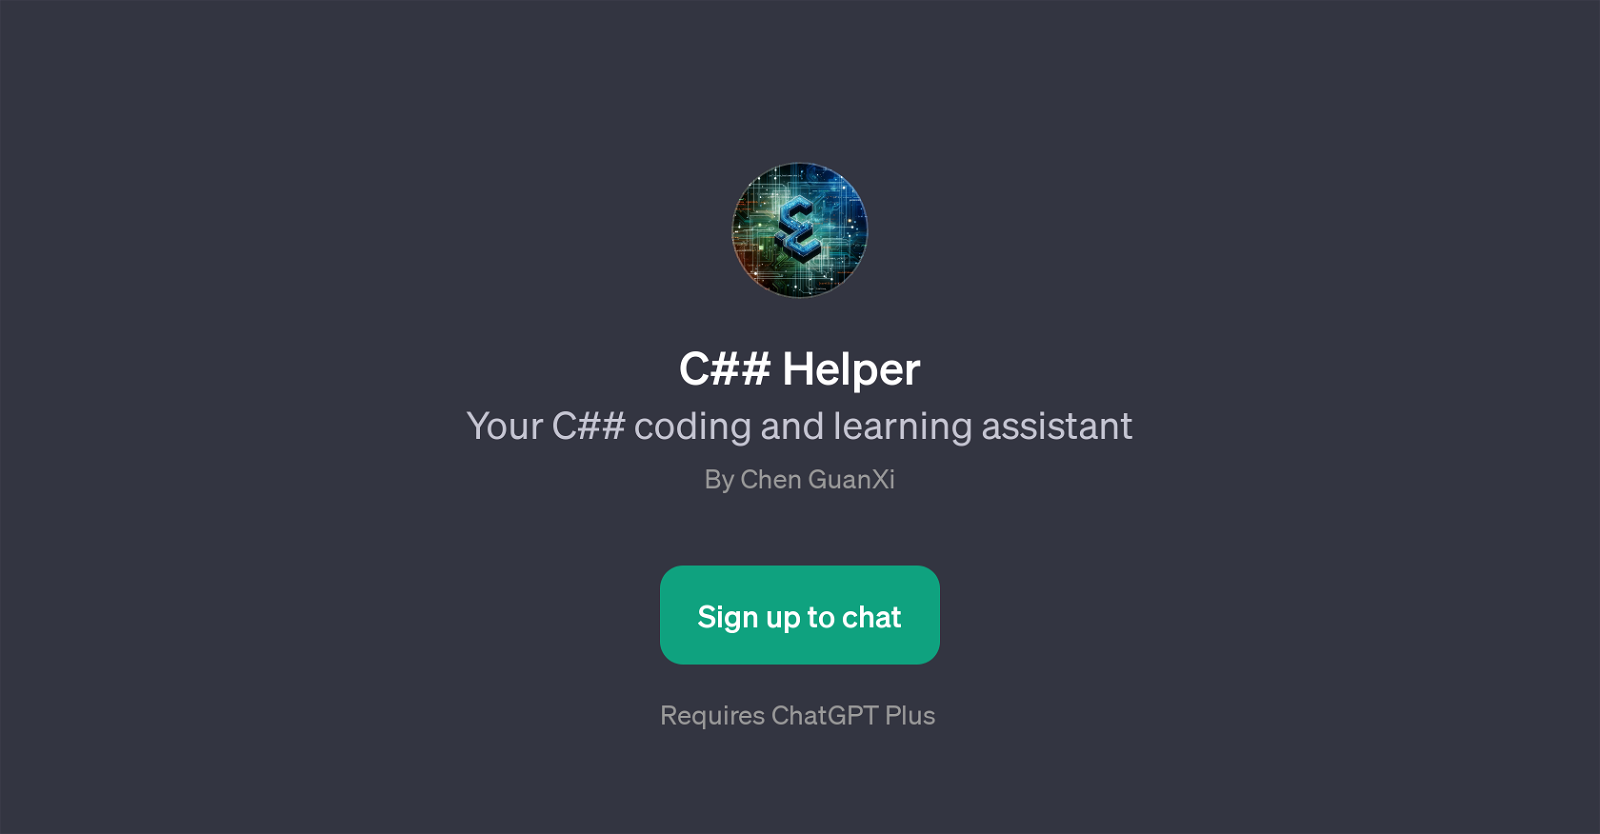 C## Helper website